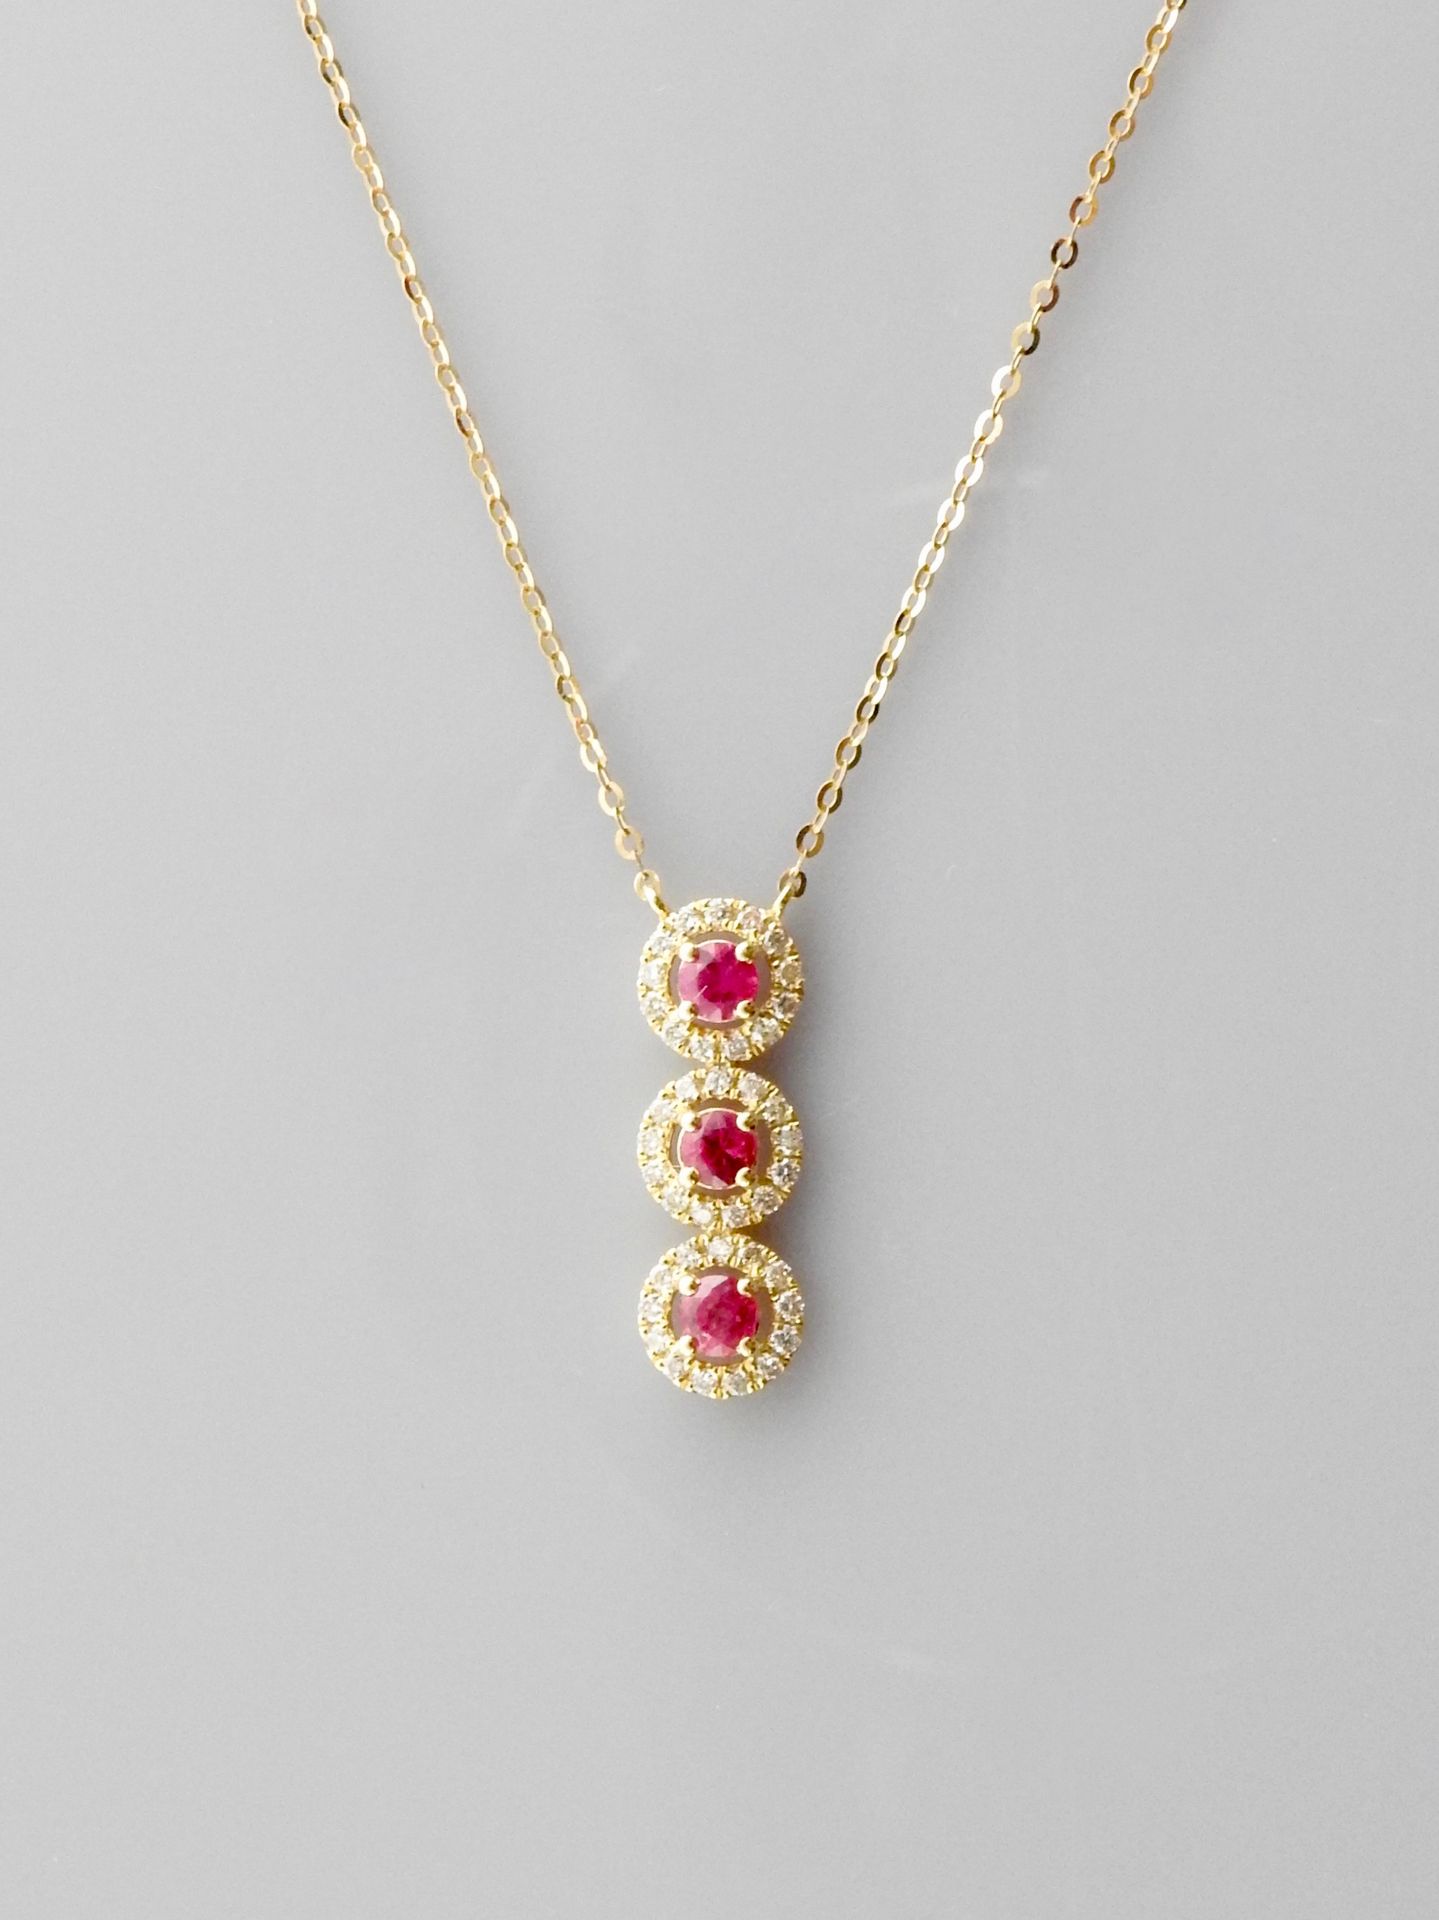 Null 链条和吊坠绘制了三个玫瑰金菱形，750毫米，每一个都在一圈钻石中装饰了一颗红宝石，长度为2厘米，弹簧环扣，可调节长度为42厘米，重量：1.7克。